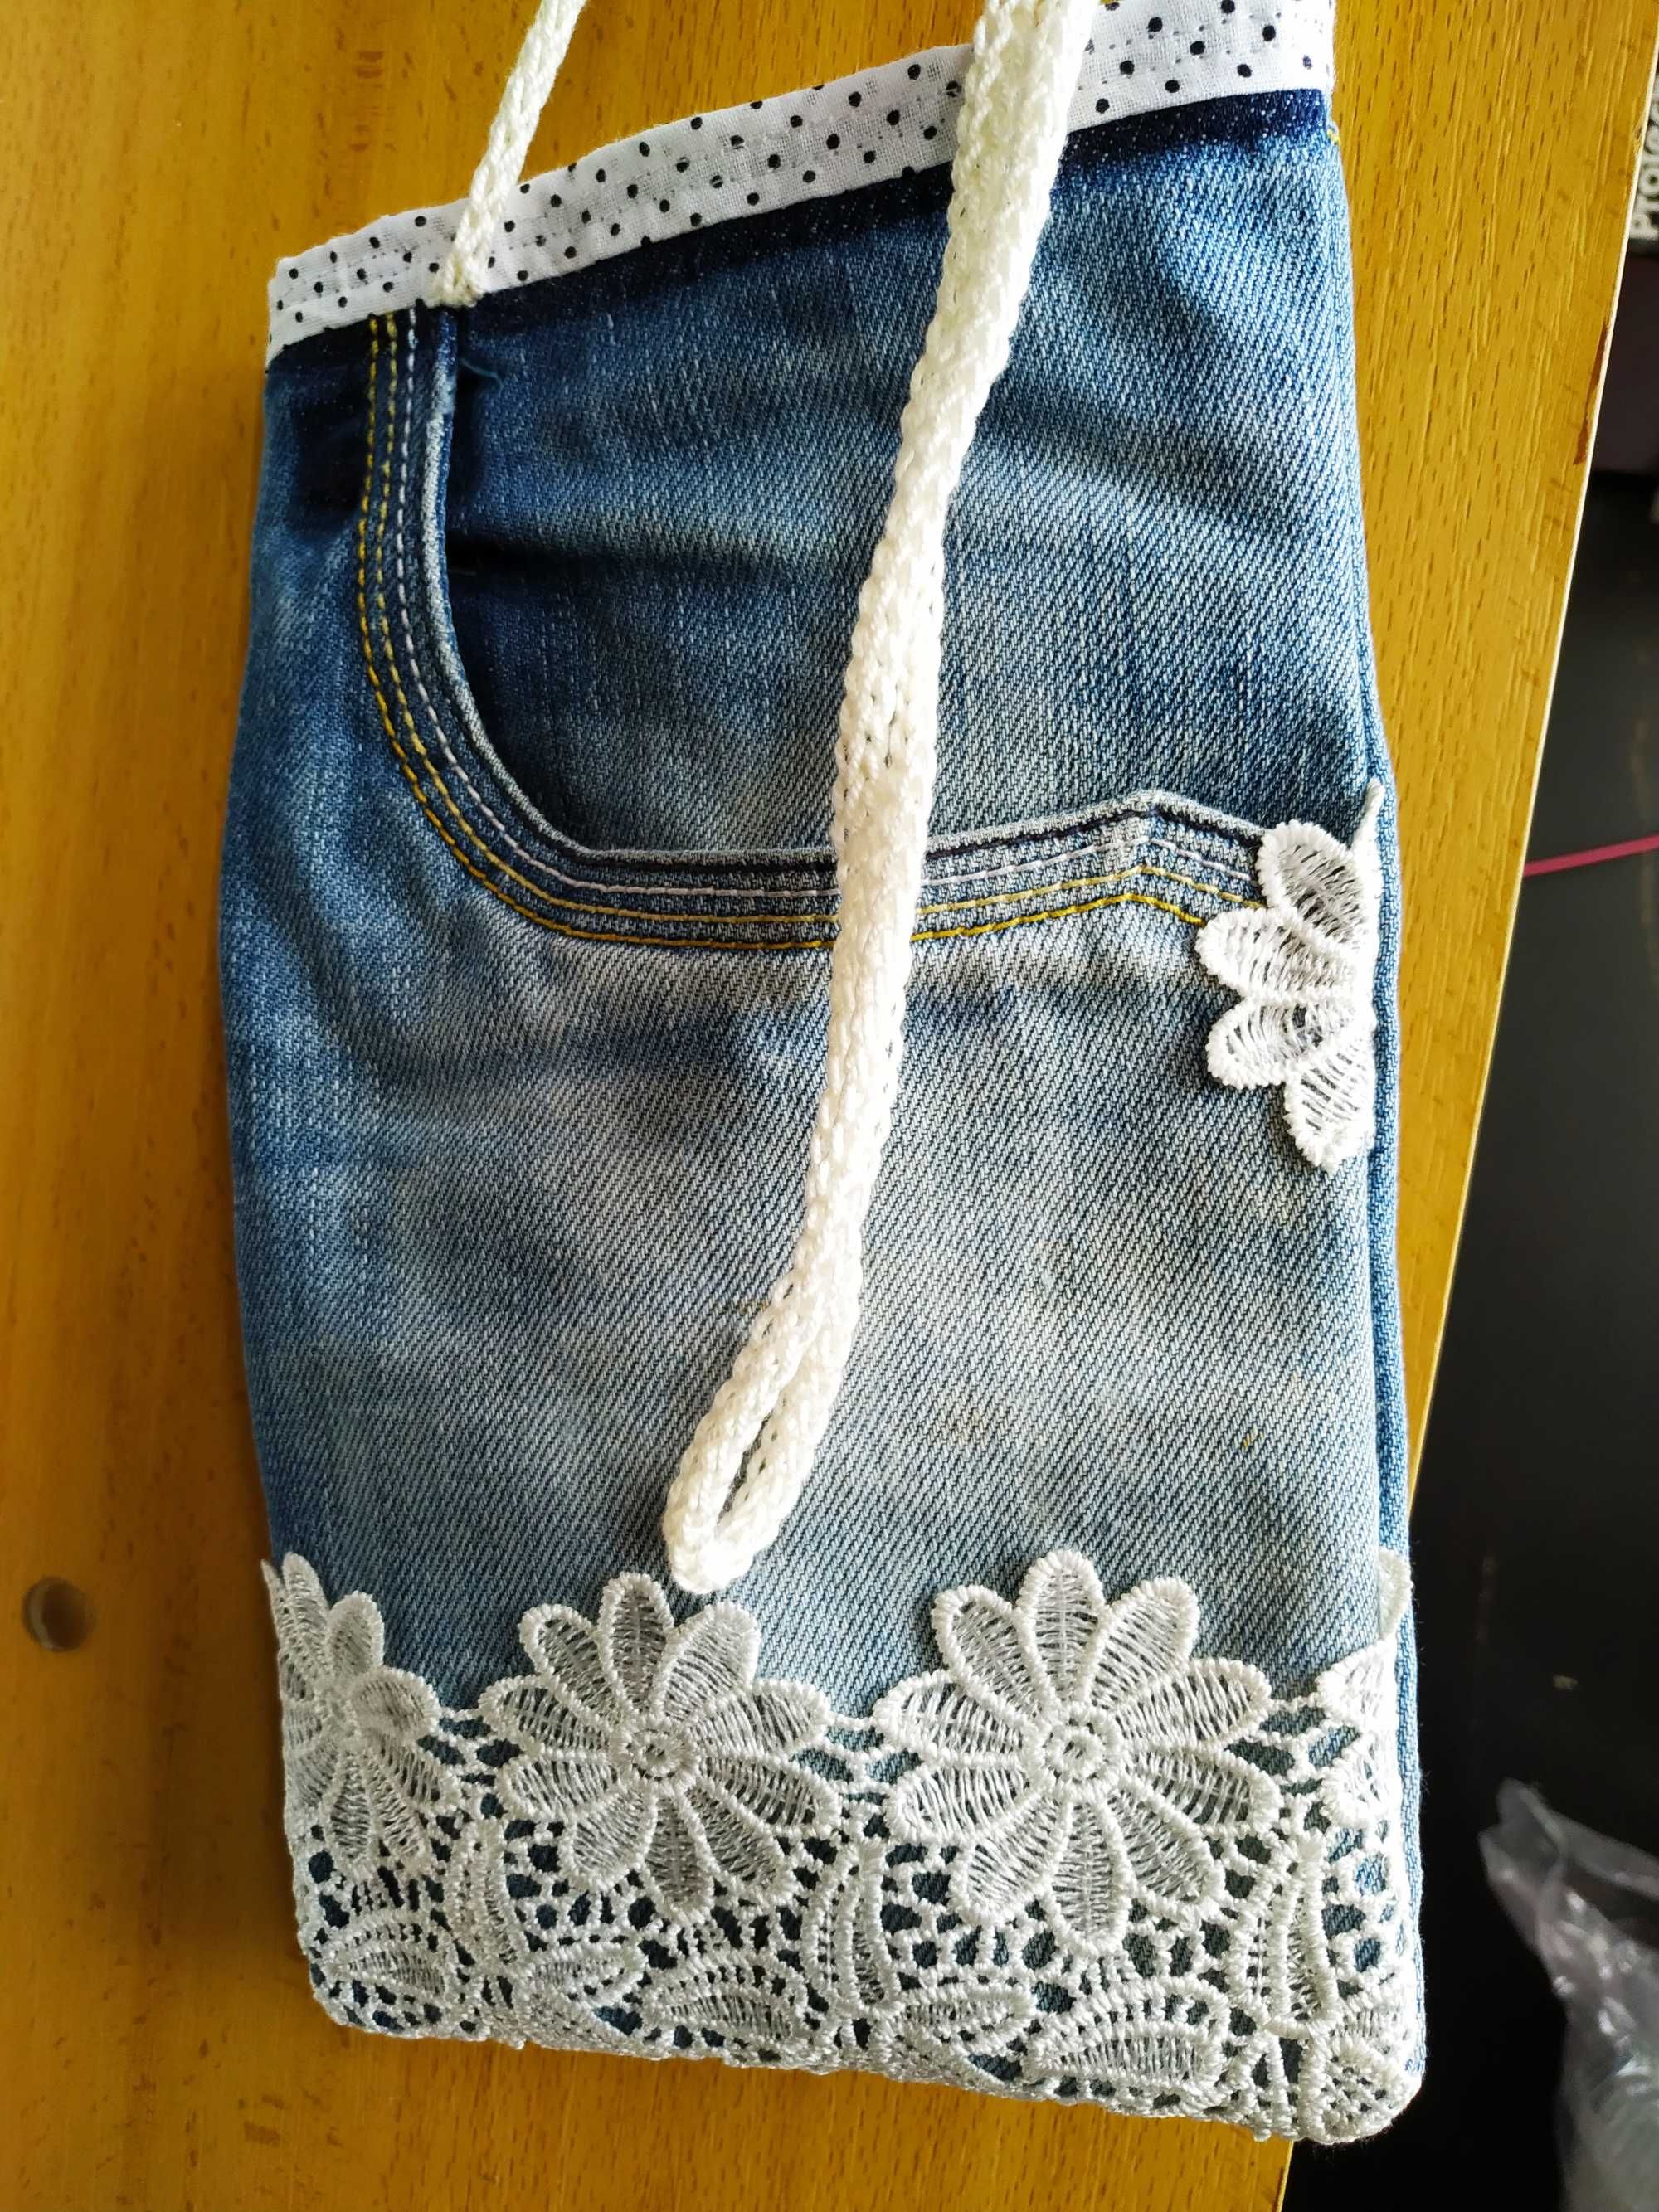 bolsa artesanal em jeans e bordado